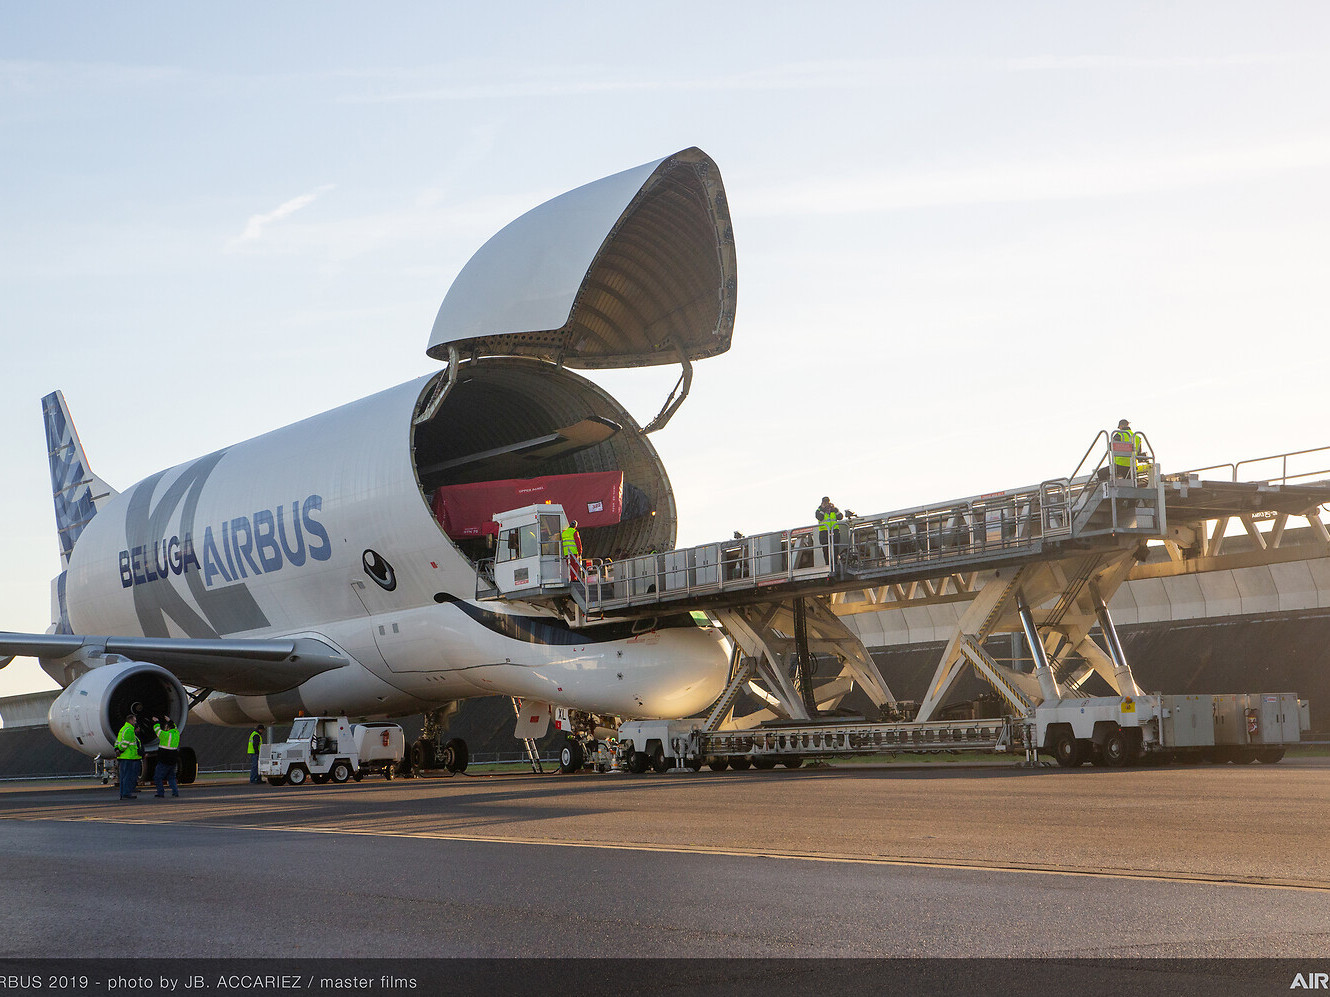 ВИДЕО: Дэлхийн хамгийн том нисэх онгоцуудын нэг “Airbus Beluga” тийрэлтэт онгоц нислэгийн үеэр аянганд цохиулжээ